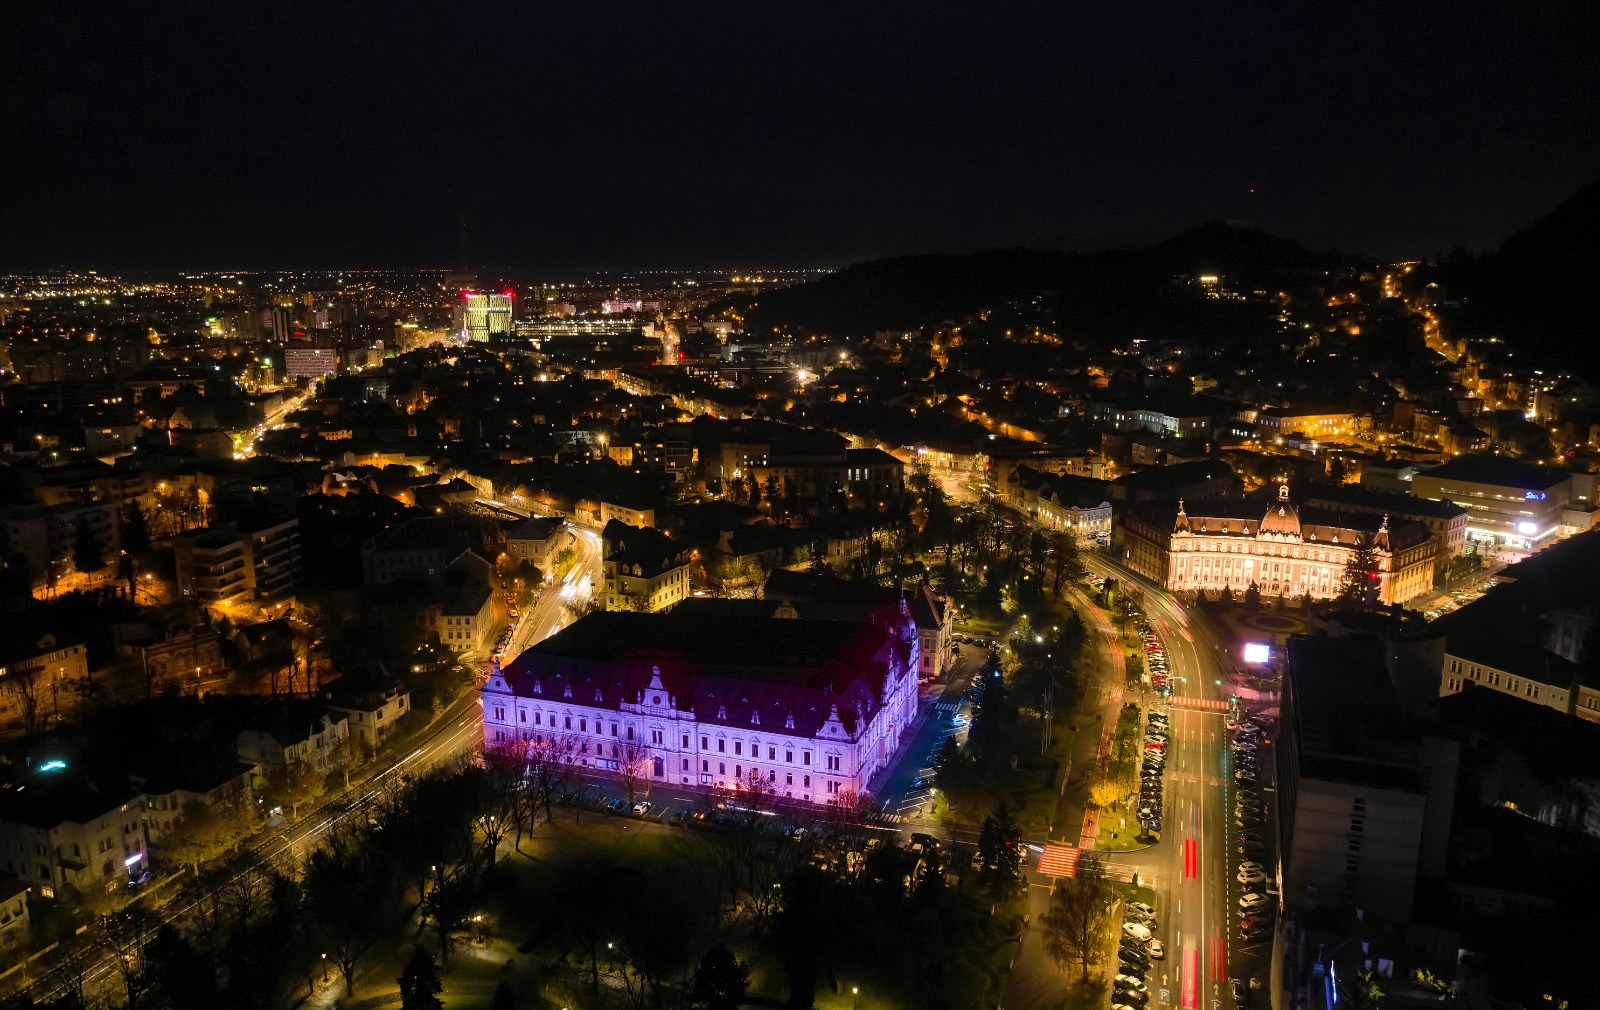 Primăria Brașov, iluminare, iluminată în mov, Ziua Internațională a Persoanelor cu Dizabilități, DGASPC, 3 decembrie, Purple Night Romania, purpuriu, mov,